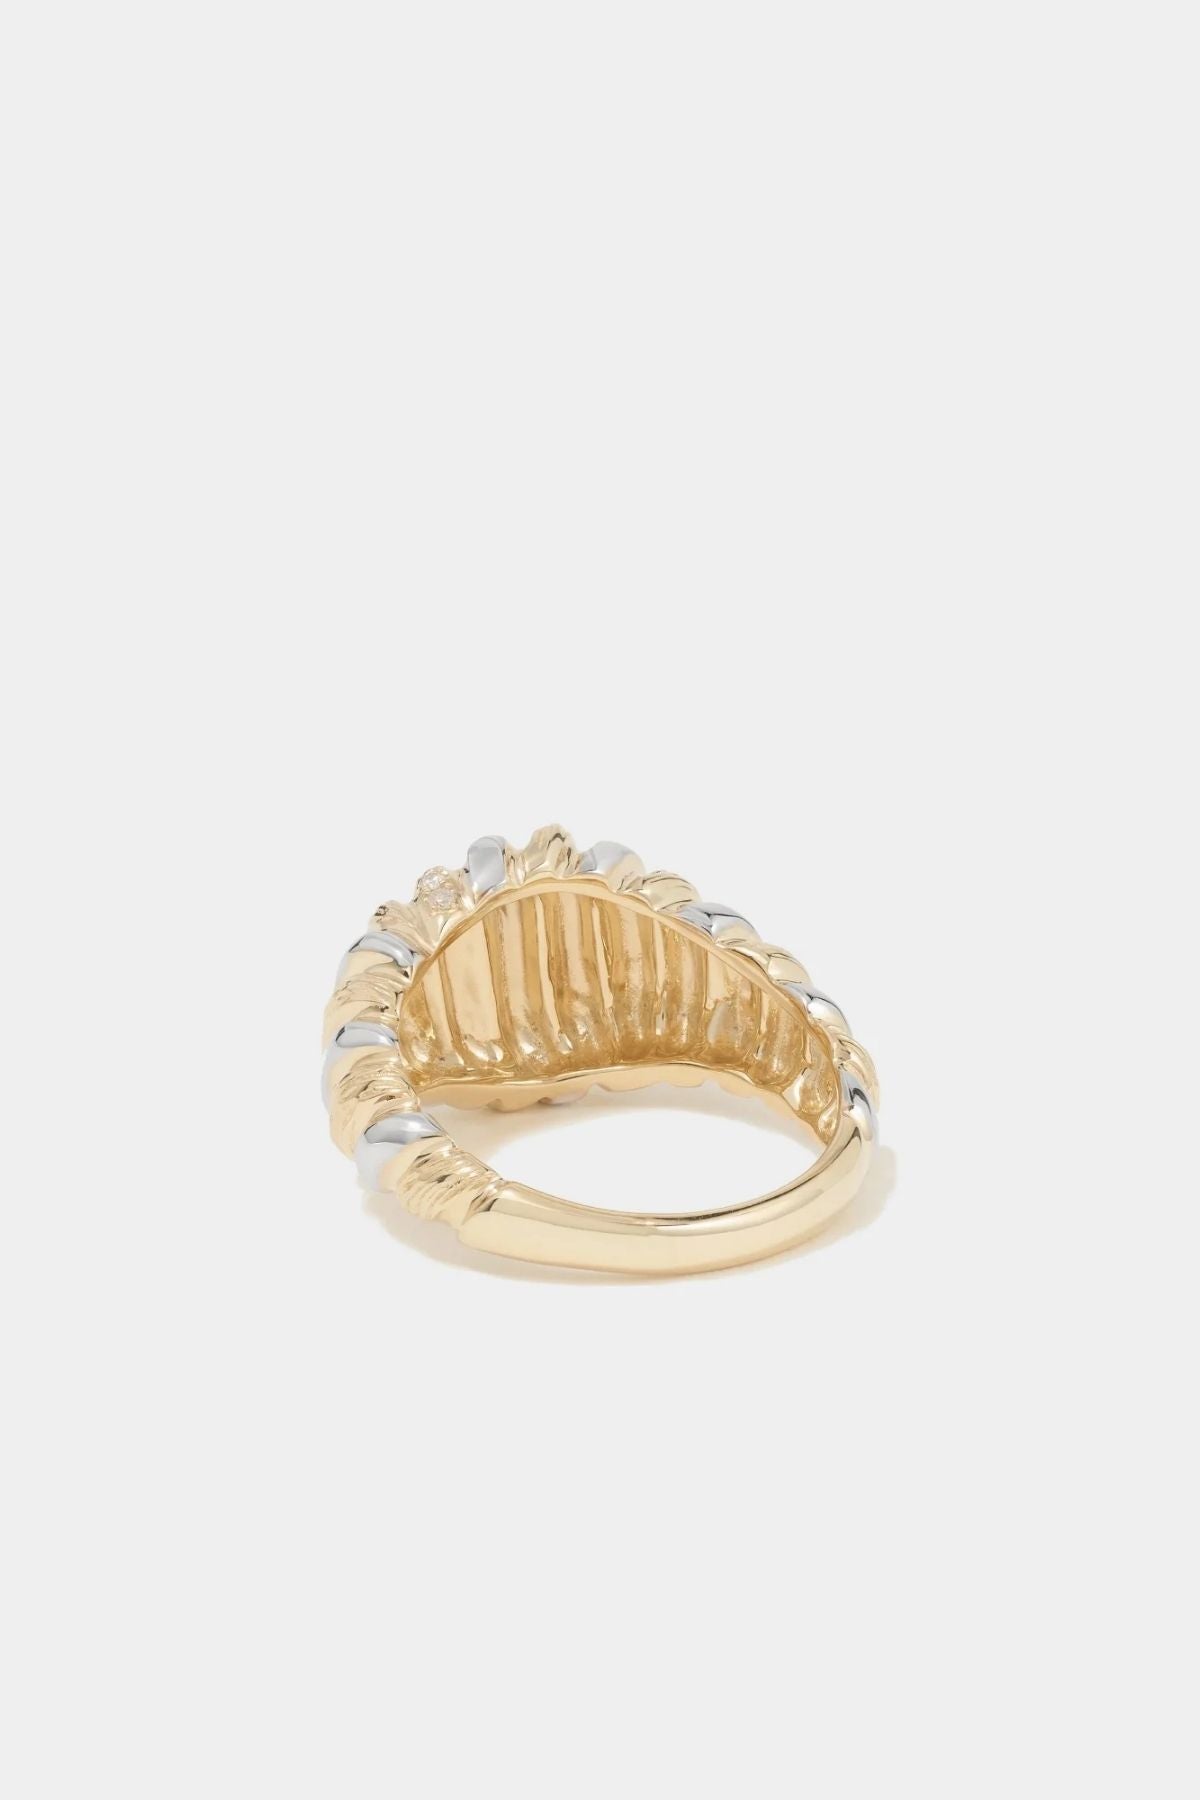 Yvonne Léon Chevaliere Gaufrette Diamond Ring - Yellow/ White Gold